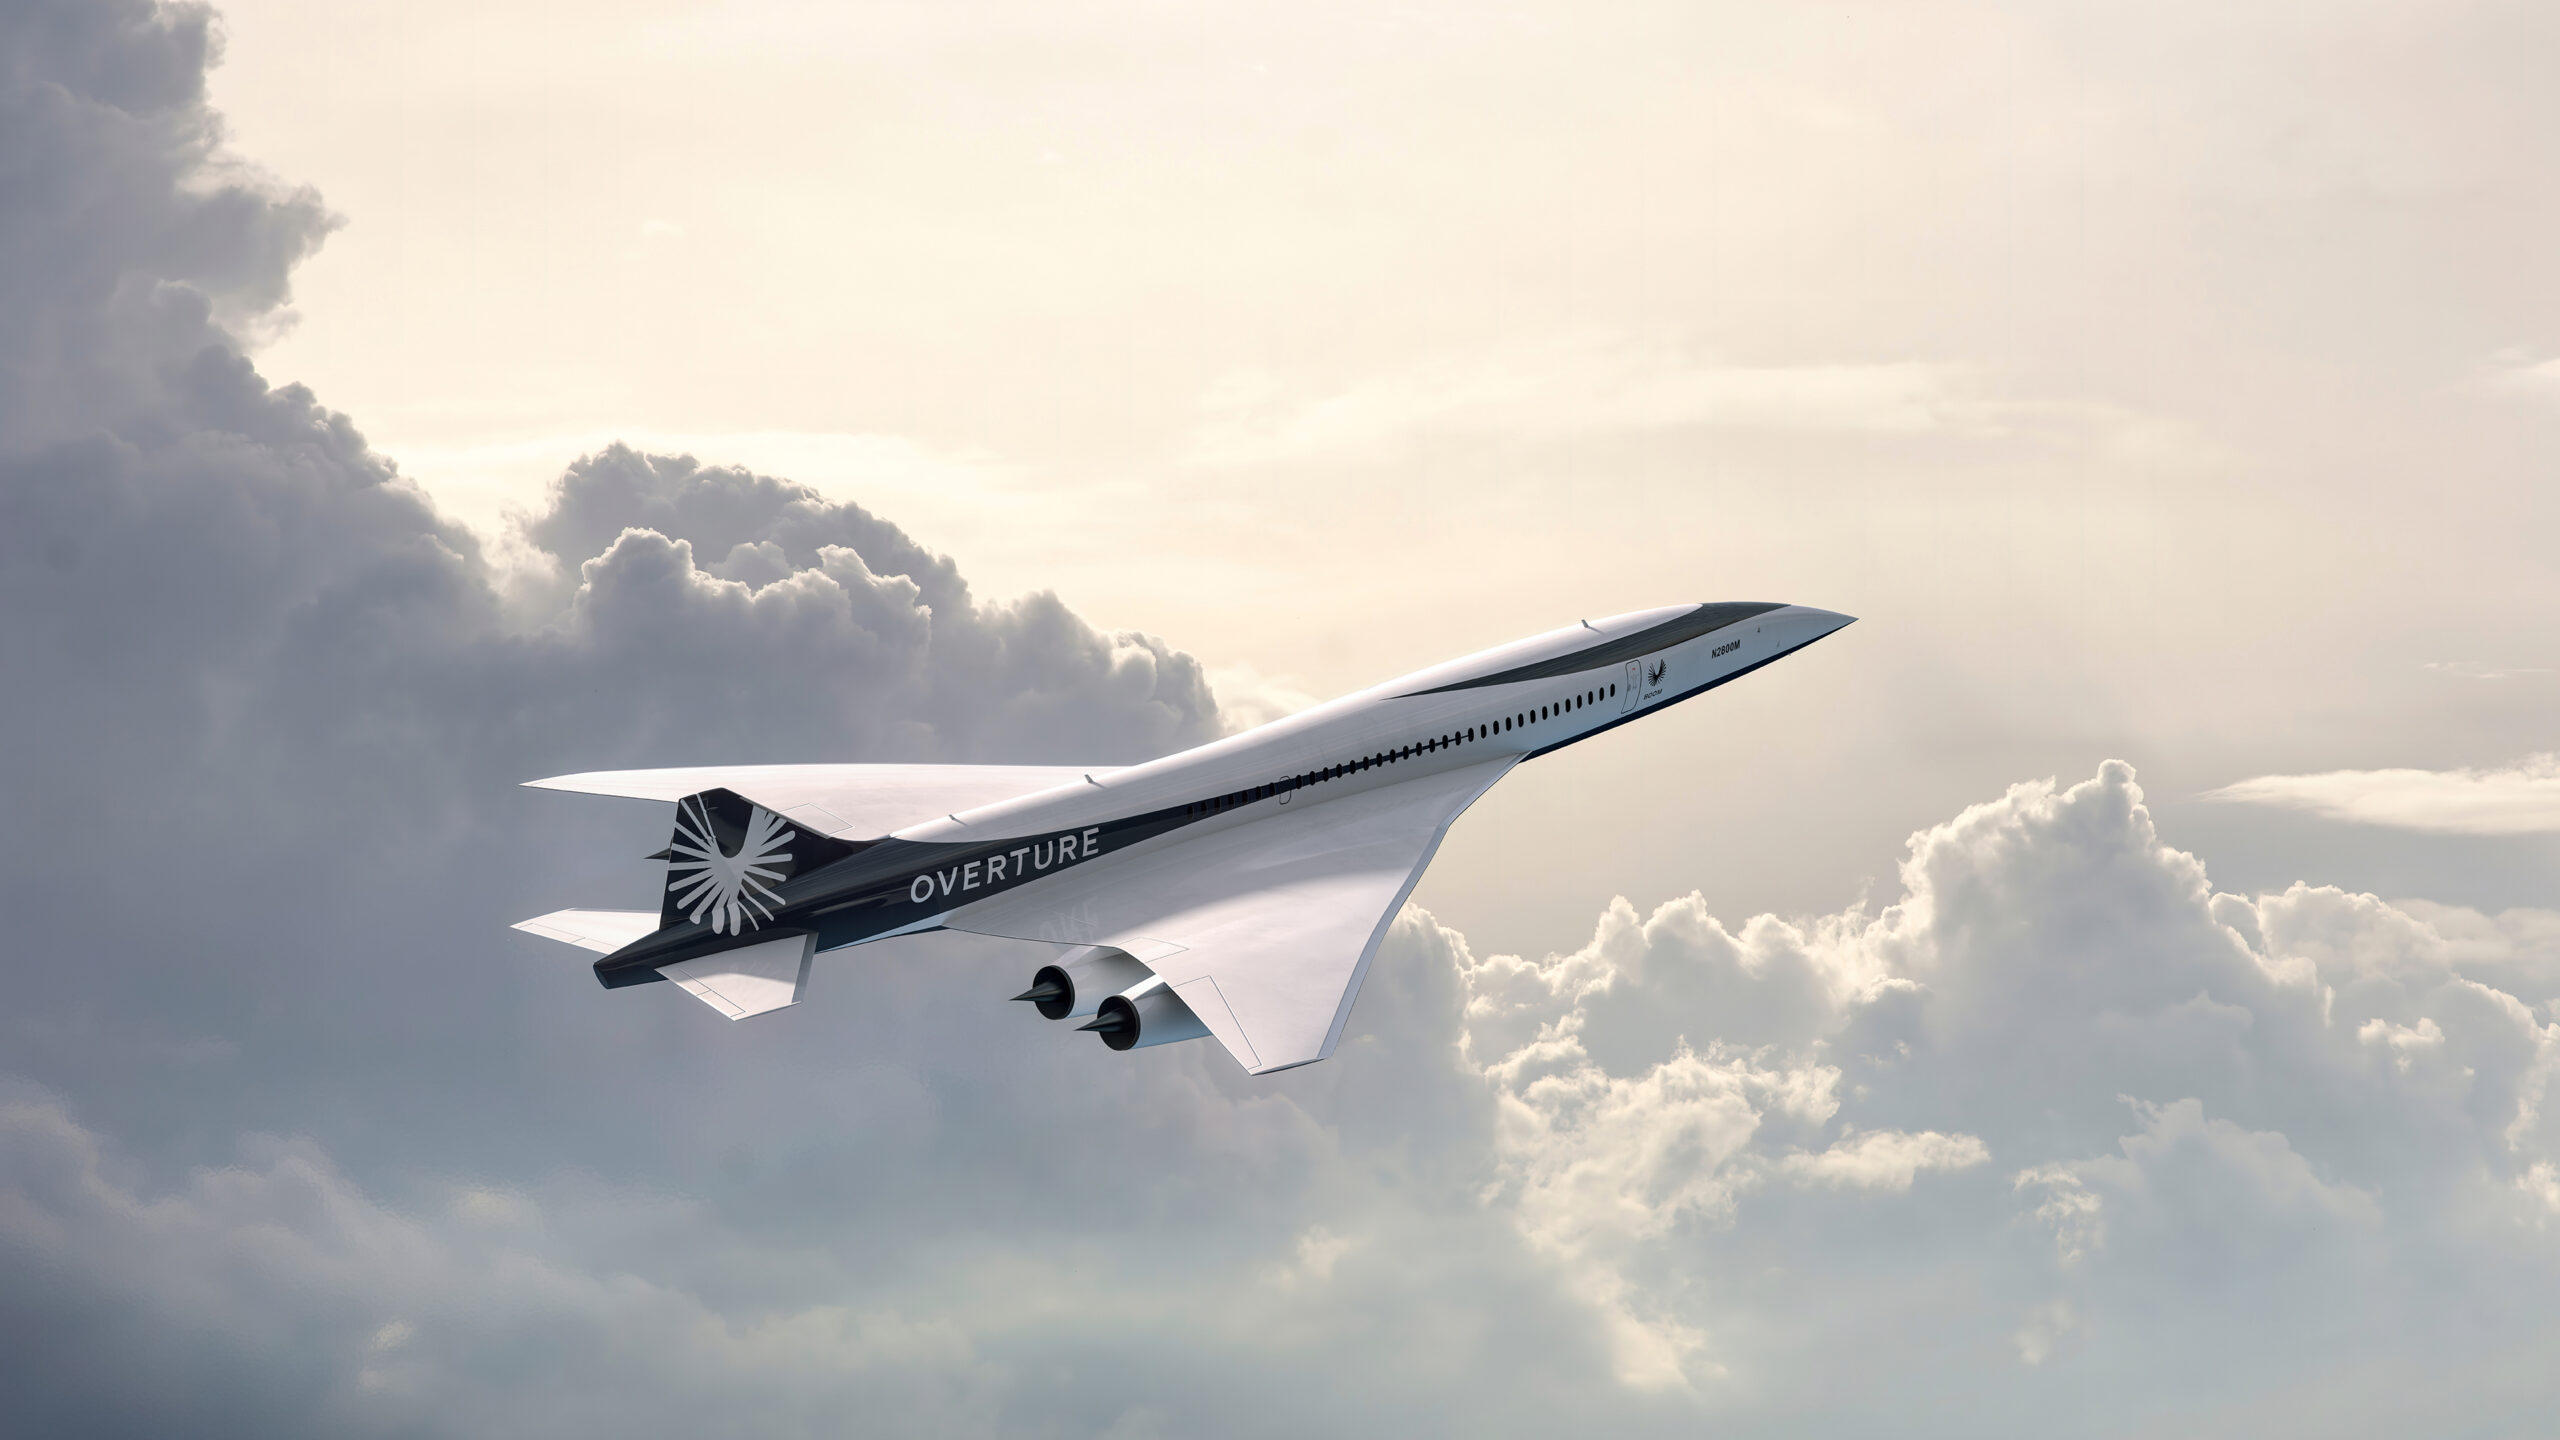 Dünya’nın En Büyük Havayolundan Süpersonik Uçak Siparişi